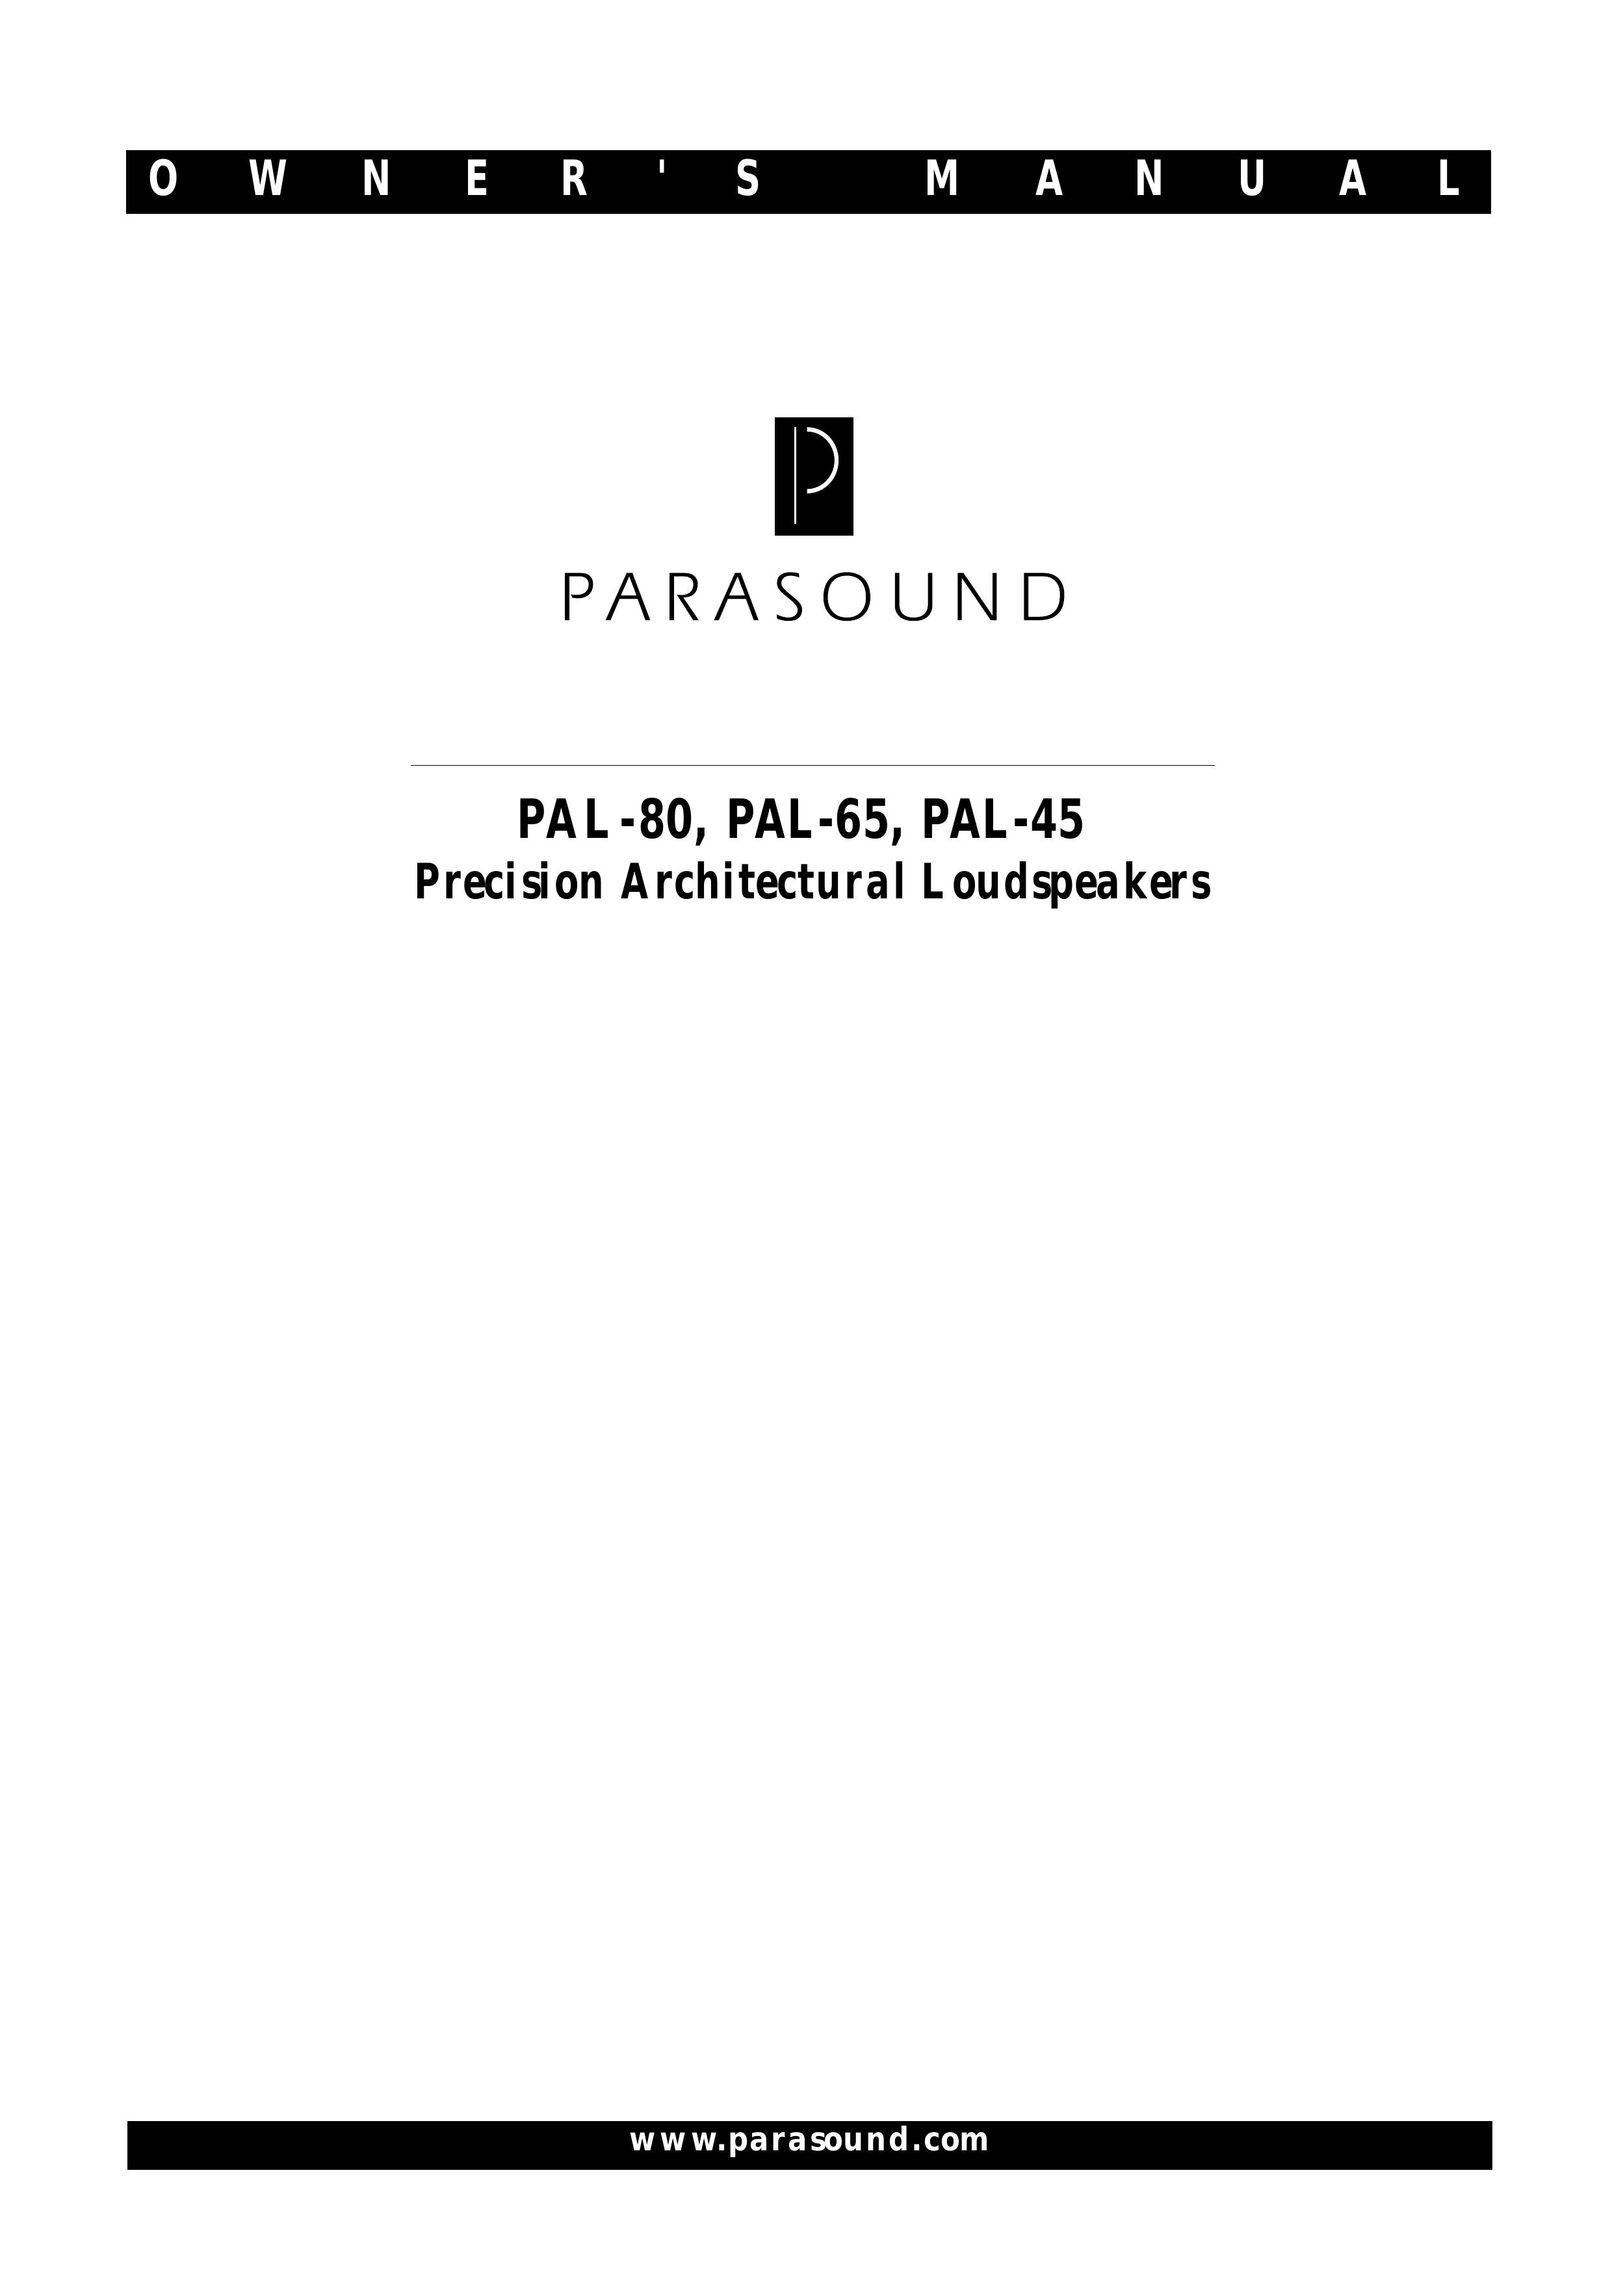 Parasound PAL-65 Portable Speaker User Manual